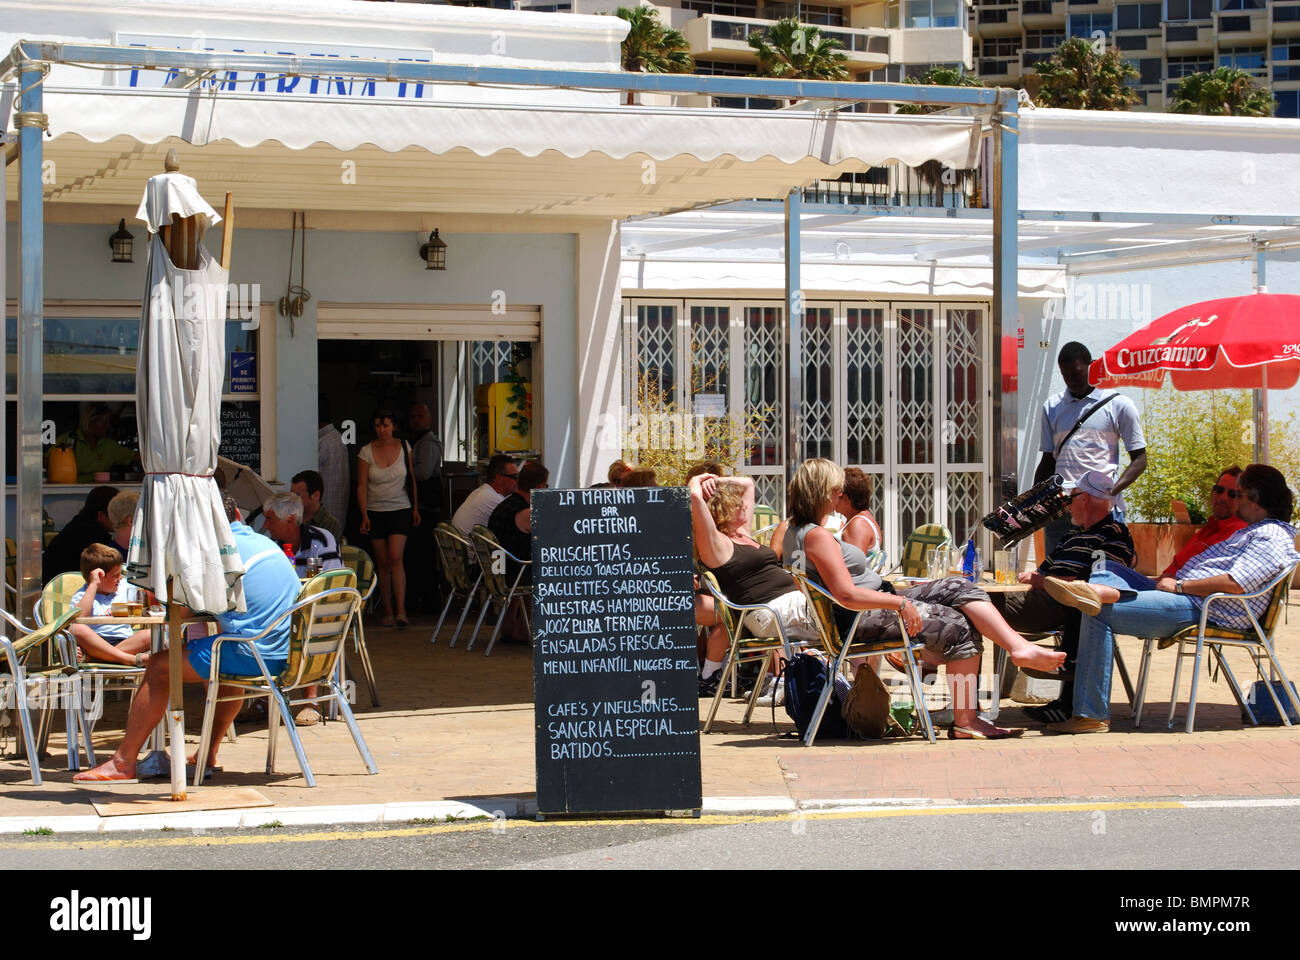 Promenade cafe, Marbella, Costa del Sol, Malaga Province, Andalucia, Spain, Western Europe. Stock Photo